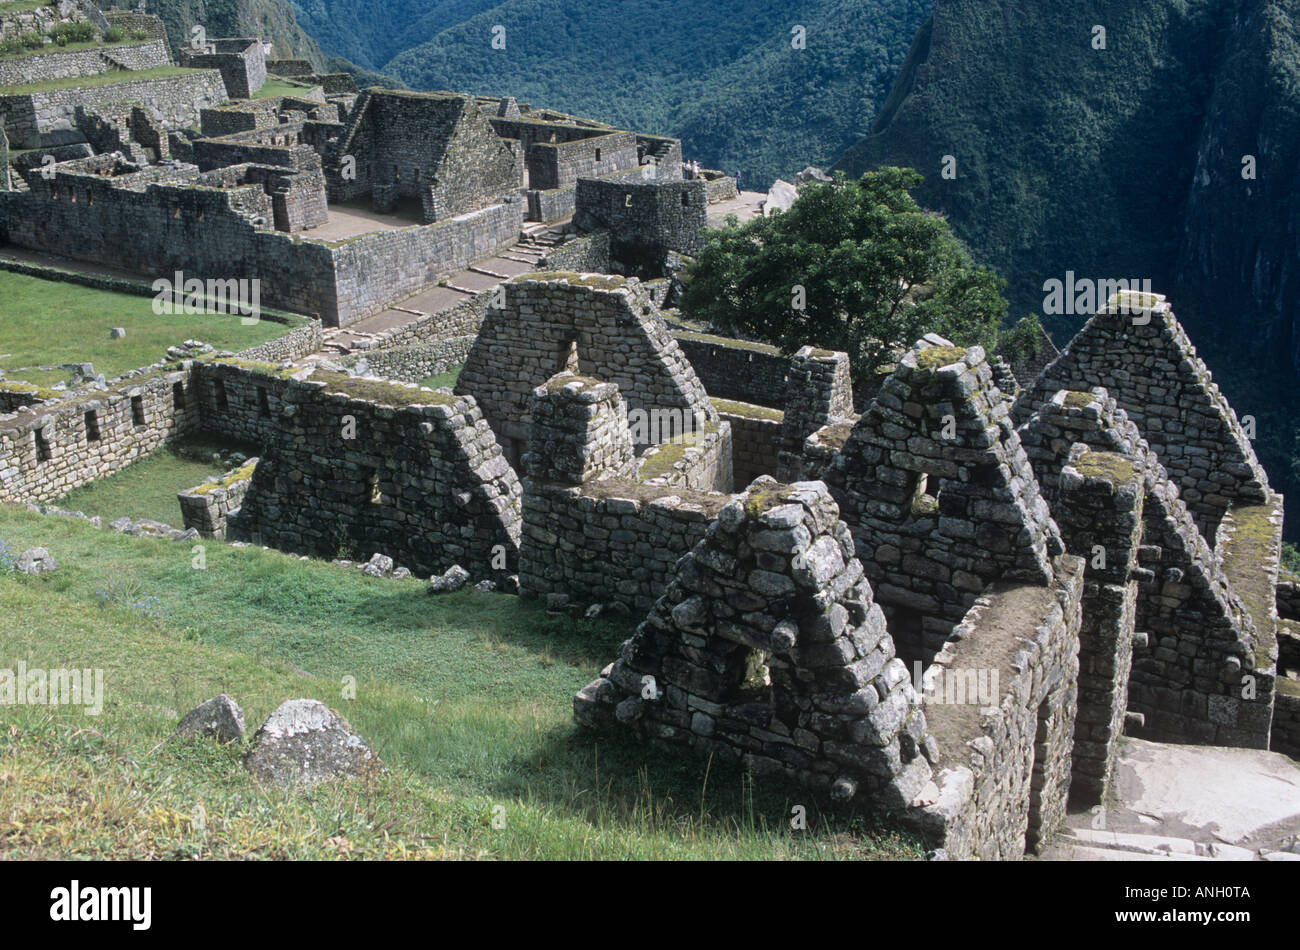 Die Inkas Mauerwerk Fähigkeiten sind noch spürbar in den prächtigen Ruinen von Machu Picchu, die Heilige Stadt, eingebettet in Perus Bergwelt Stockfoto